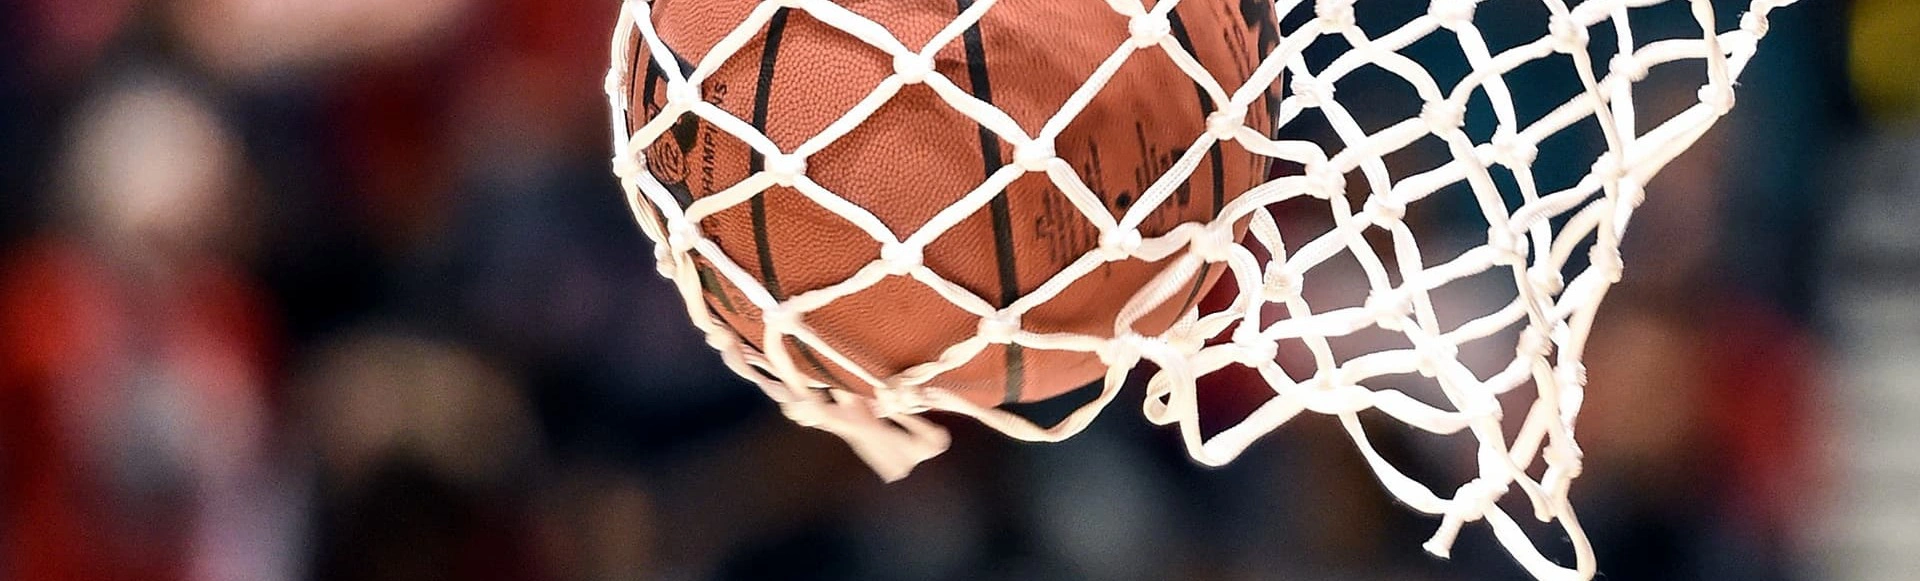 «Армейские» баскетболисты одерживают еще одну победу в Единой лиге ВТБ